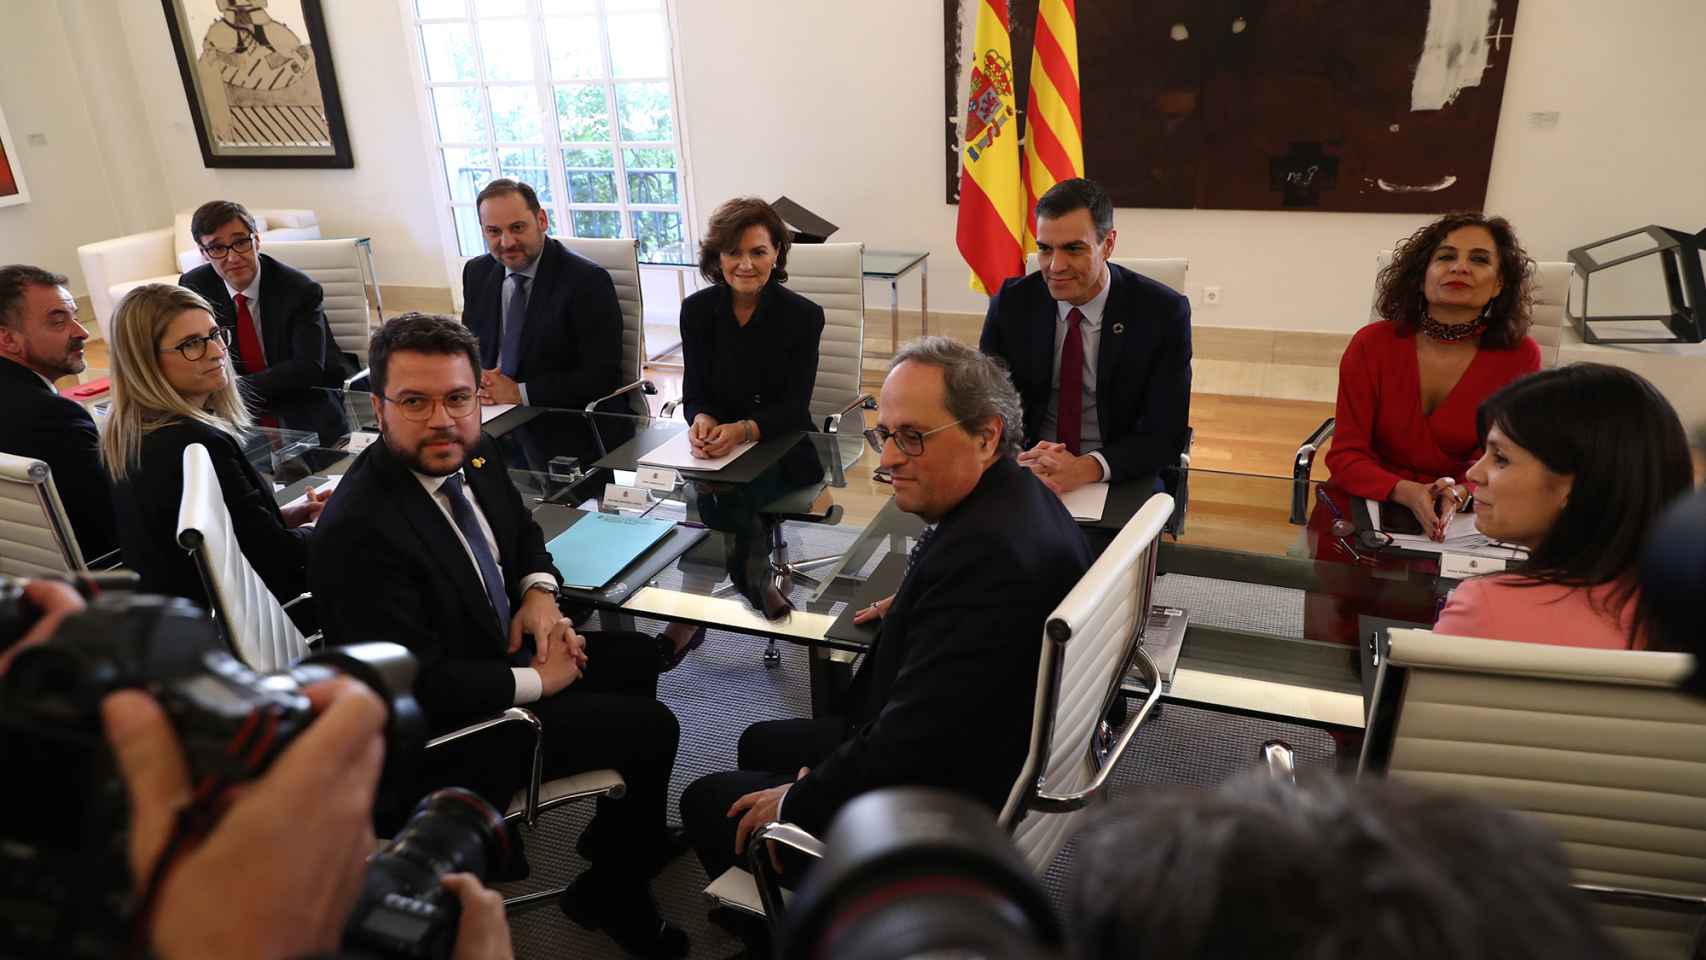 Primera reunión de la Mesa de Diálogo, el 26 de febrero de 2020. Al fondo, Illa, Ábalos, Calvo, Sánchez y Montero. Enfrente, Aragonès y Torra.